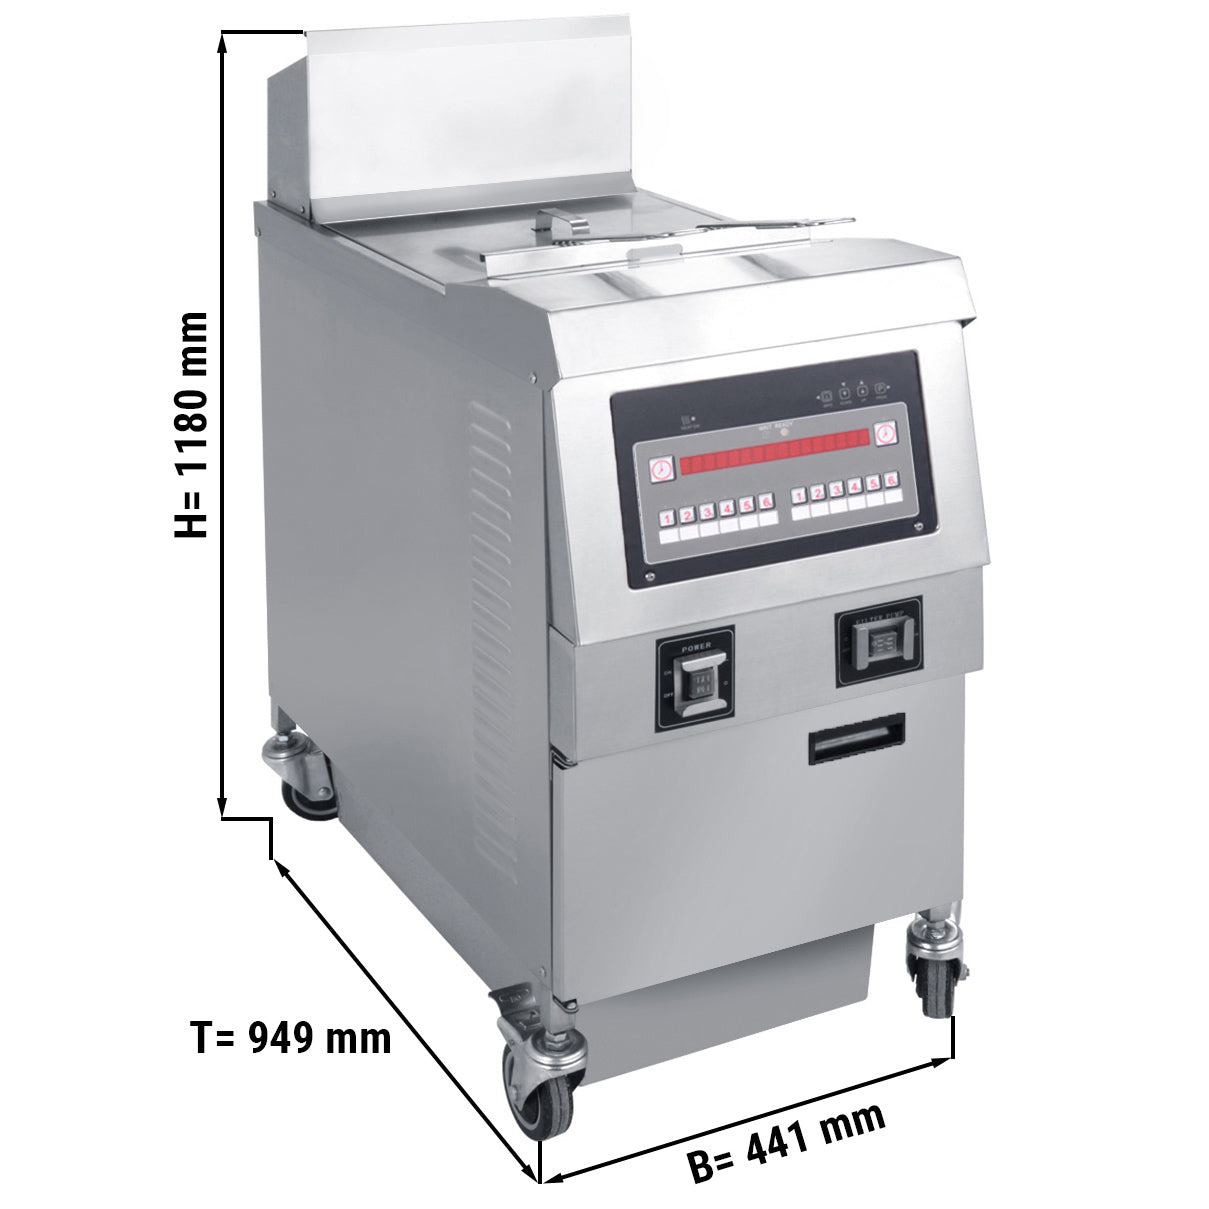 Elektrisk friture - 25 liter (14,2 kW)